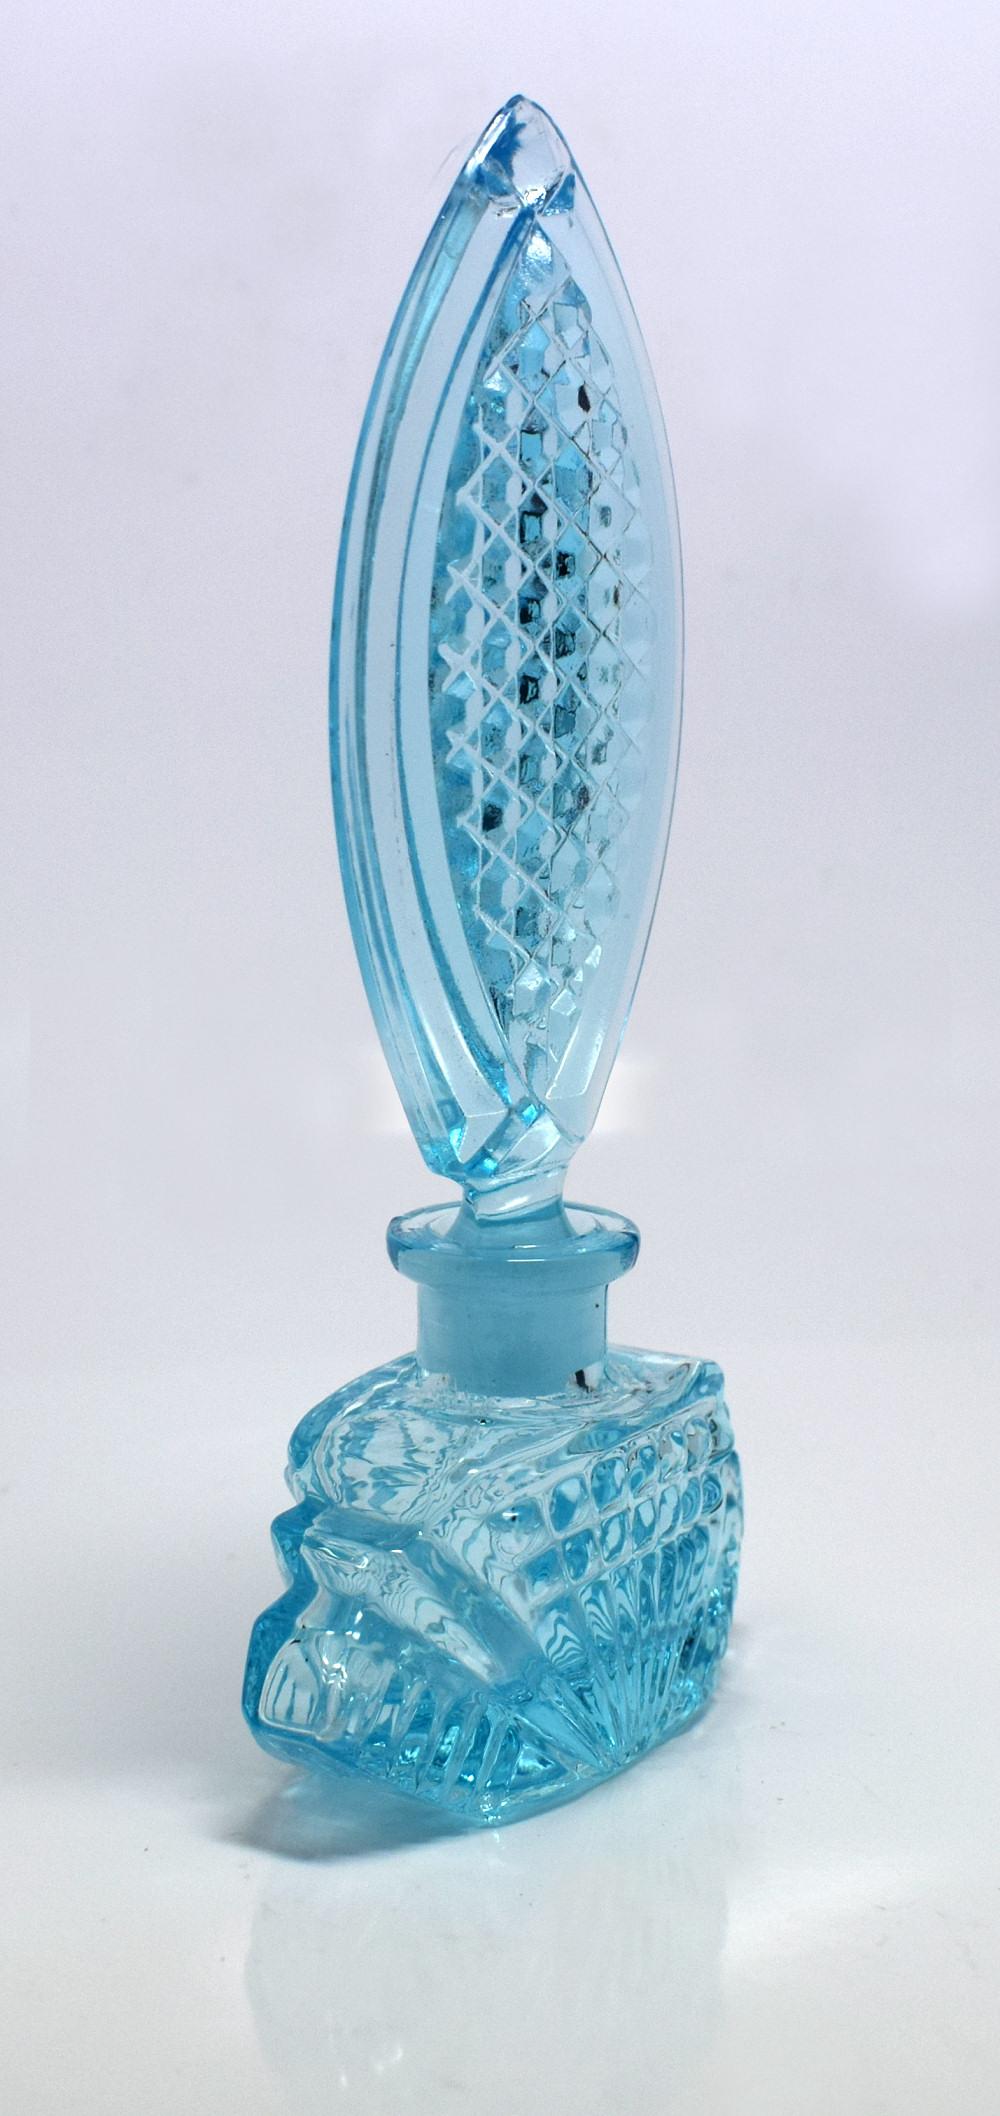 Nous vous présentons ce flacon de parfum en verre de style Art déco bleu layette. Bel objet, sans aucun dommage, juste des signes mineurs d'utilisation.